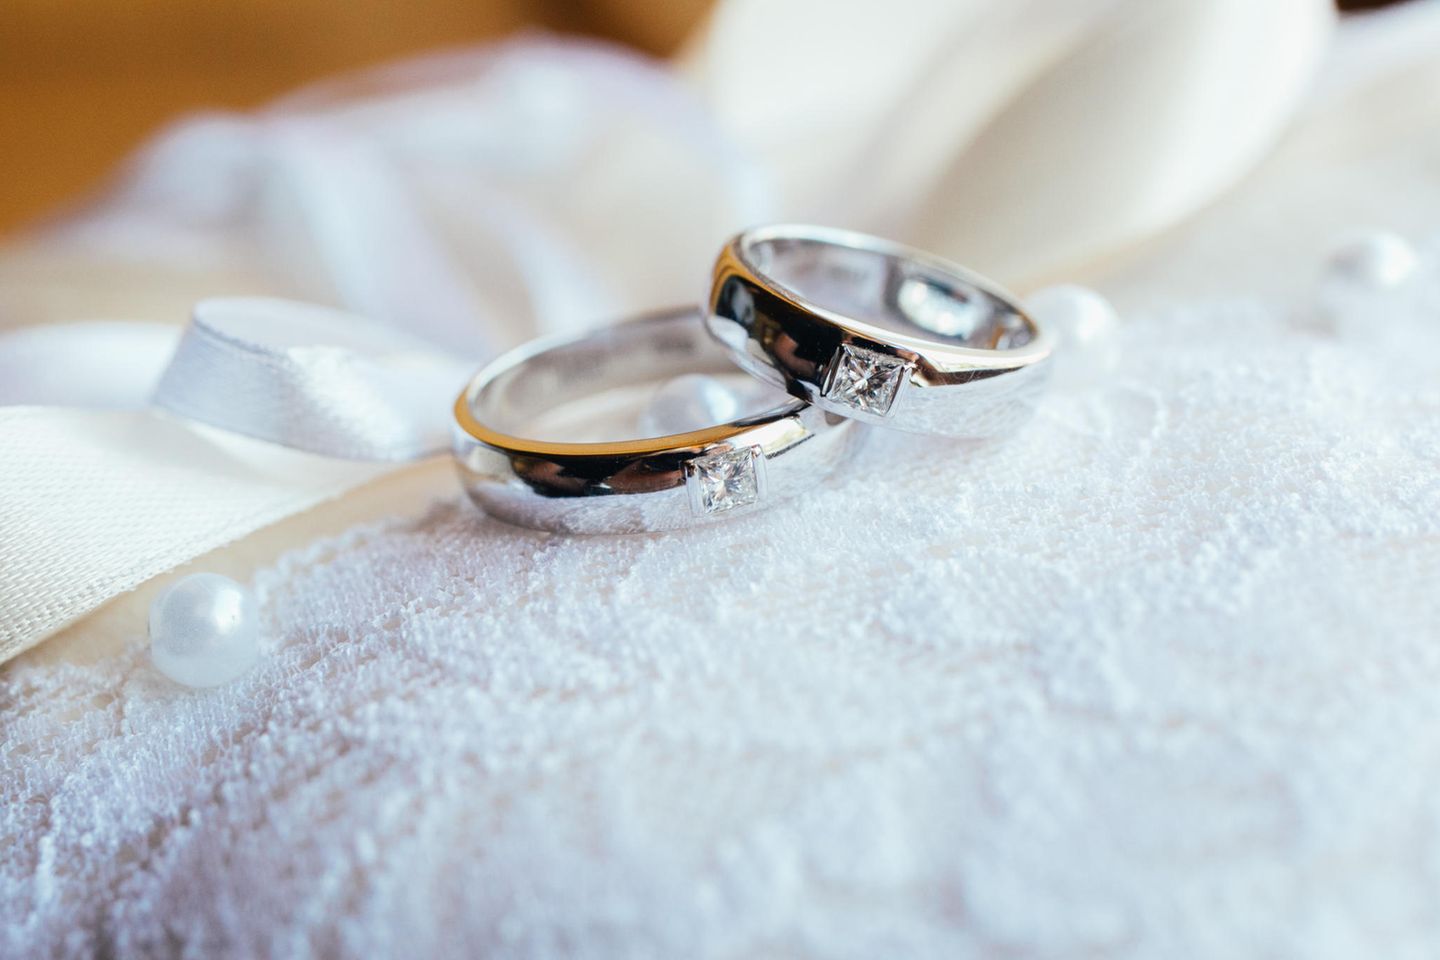 Ehevertrag: Vor der Hochzeit zum Notar?